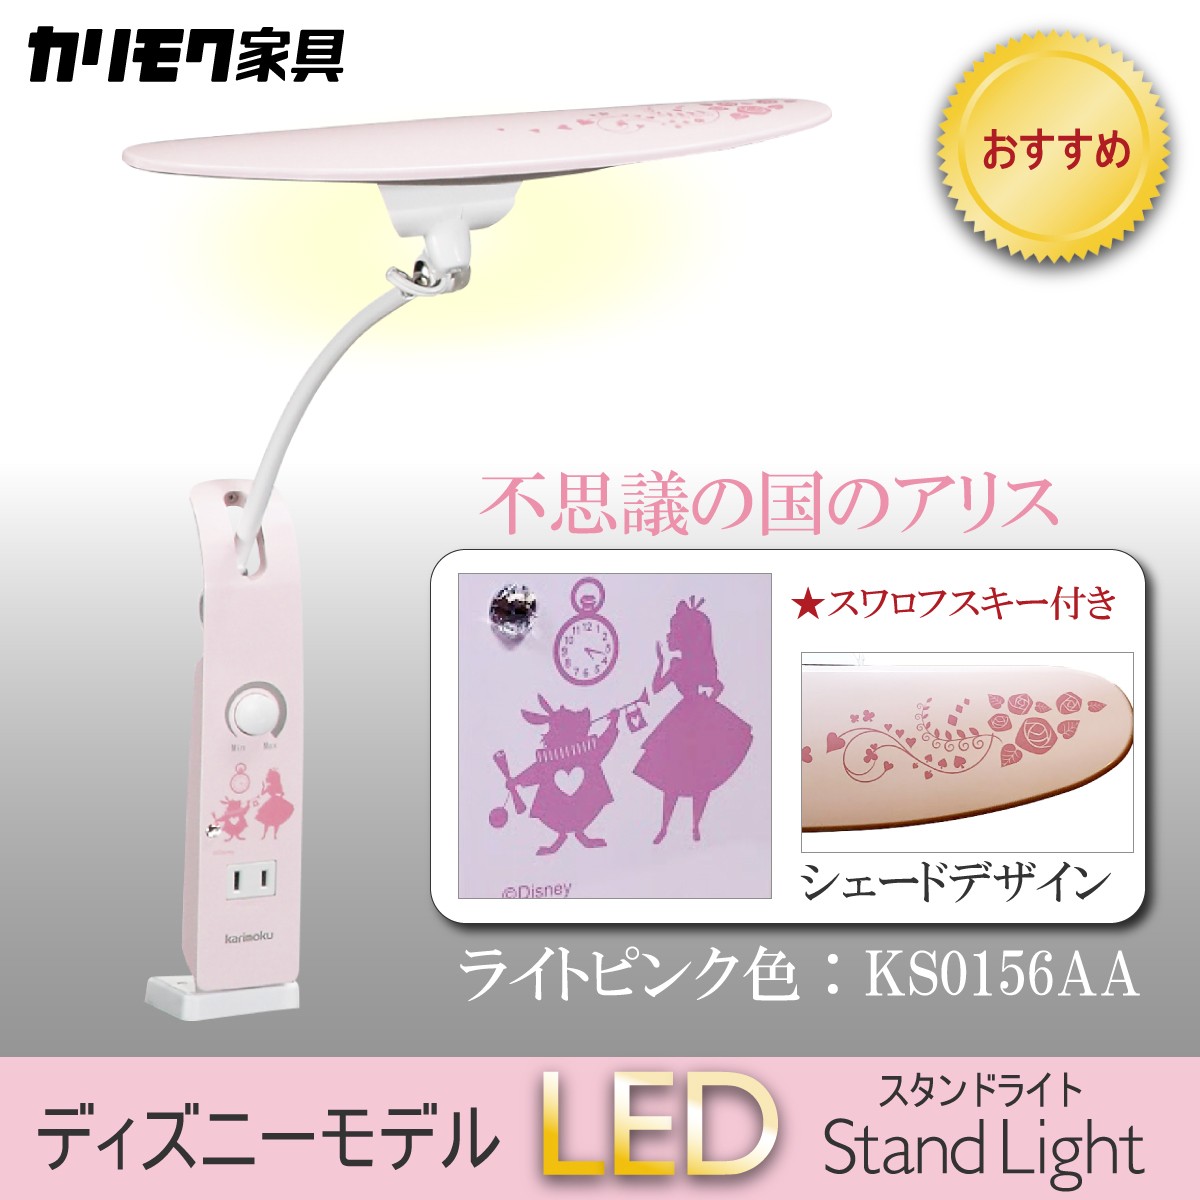 ディズニーモデル LED調光 デスクライト 不思議の国のアリス ライトピンク色